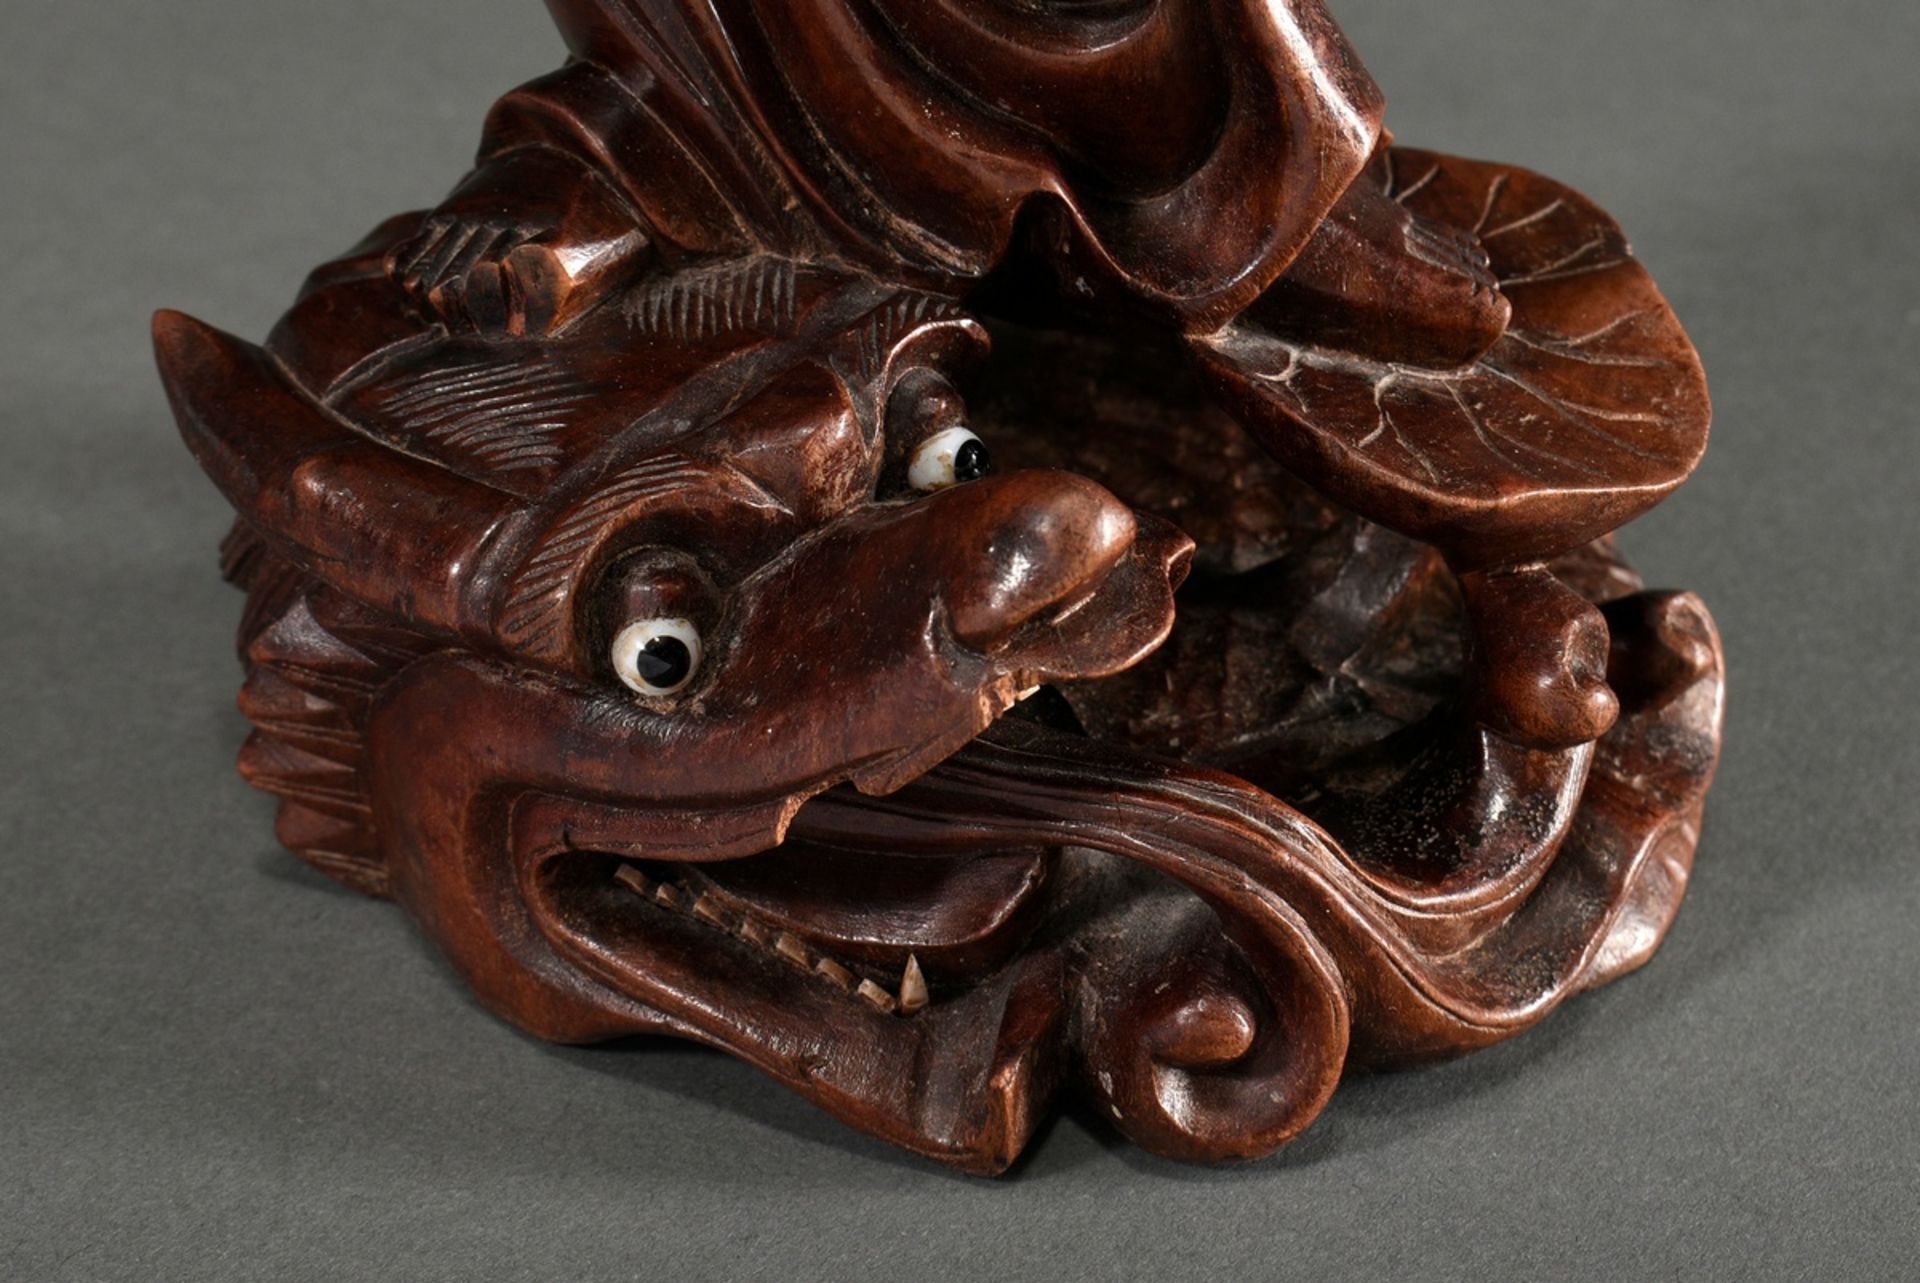 Guanyin auf Lotosblatt und Drachenkopf stehend in eleganter Bewegung, Redwood mit eingesetzten Glas - Bild 3 aus 3